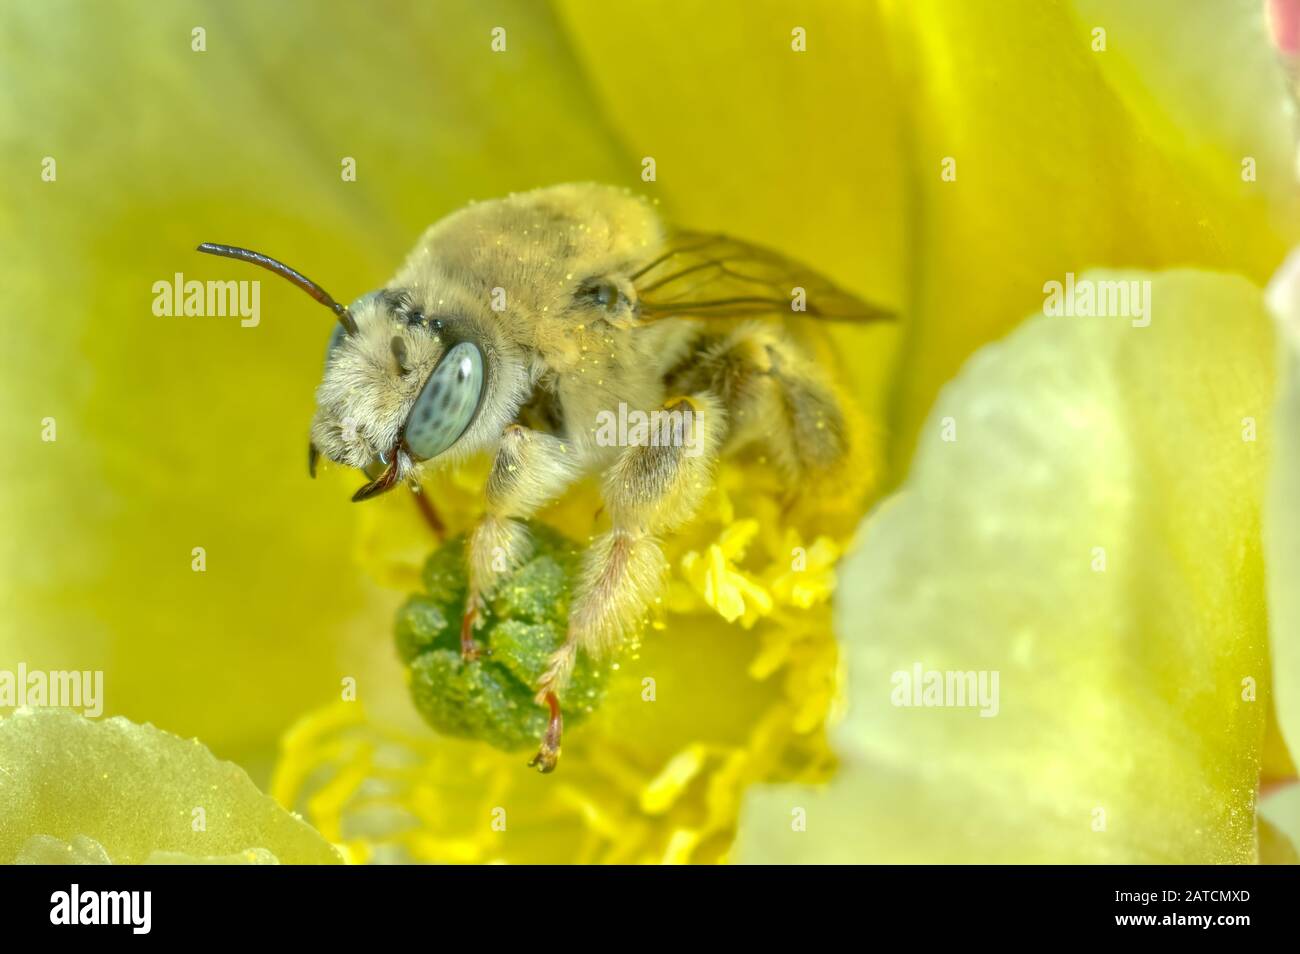 Una abeja de Cactus nativa de Arizona profundamente dentro de una flor que apesta a ella. Estas abejas solitarias no construyen colmenas y en realidad luchan por el individuo Foto de stock